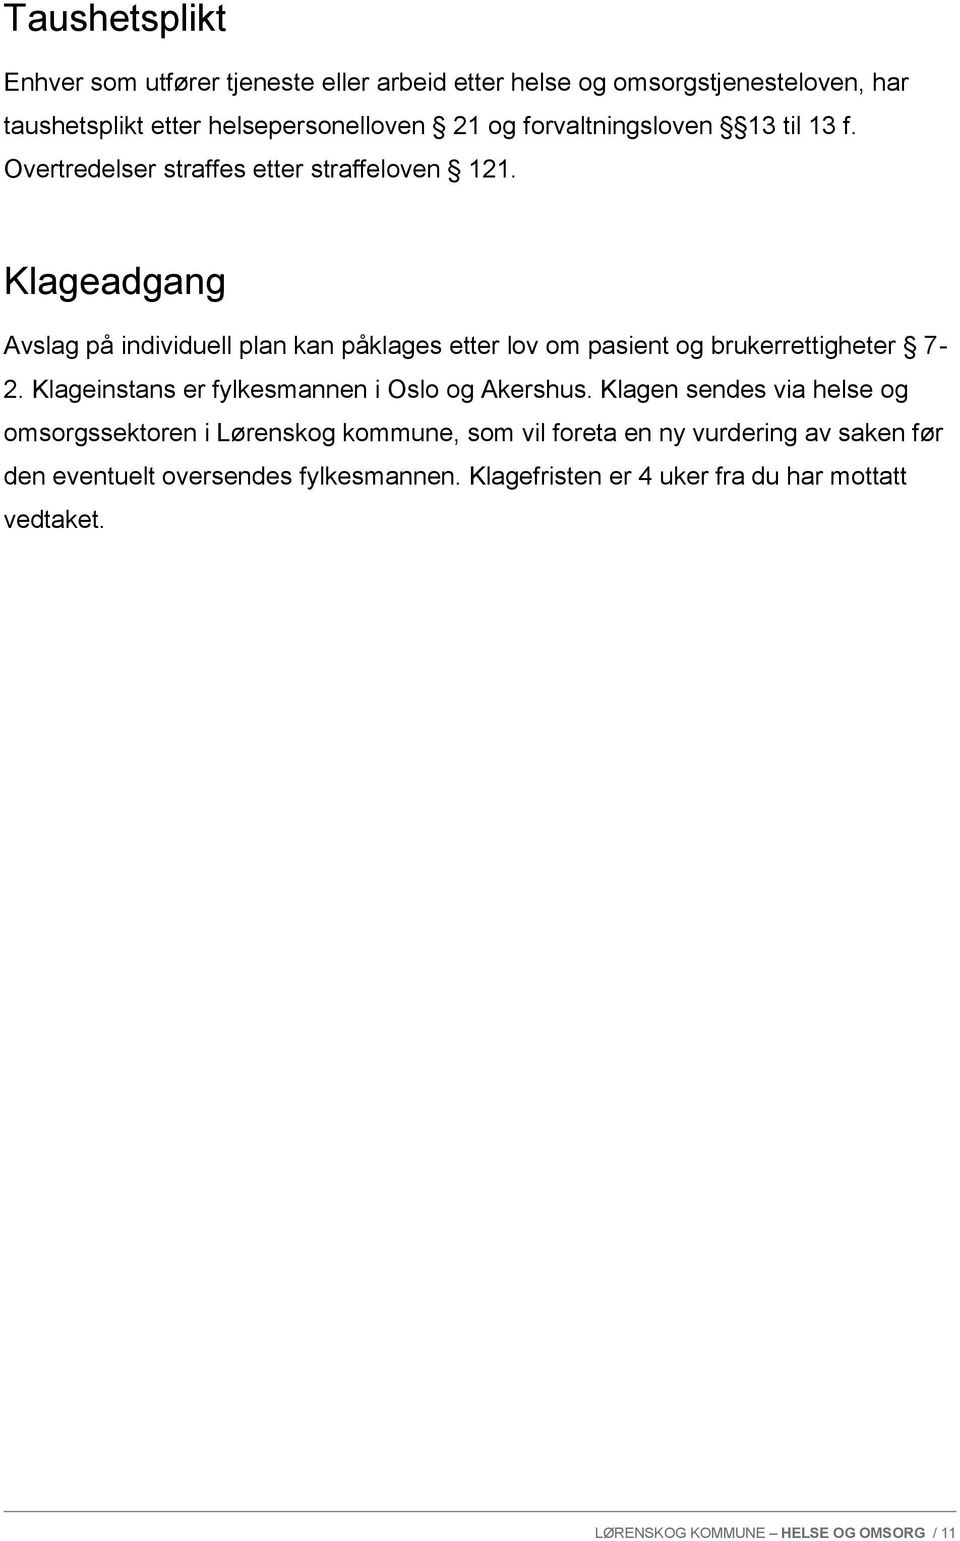 Klageadgang Avslag på individuell plan kan påklages etter lov om pasient og brukerrettigheter 7-2. Klageinstans er fylkesmannen i Oslo og Akershus.